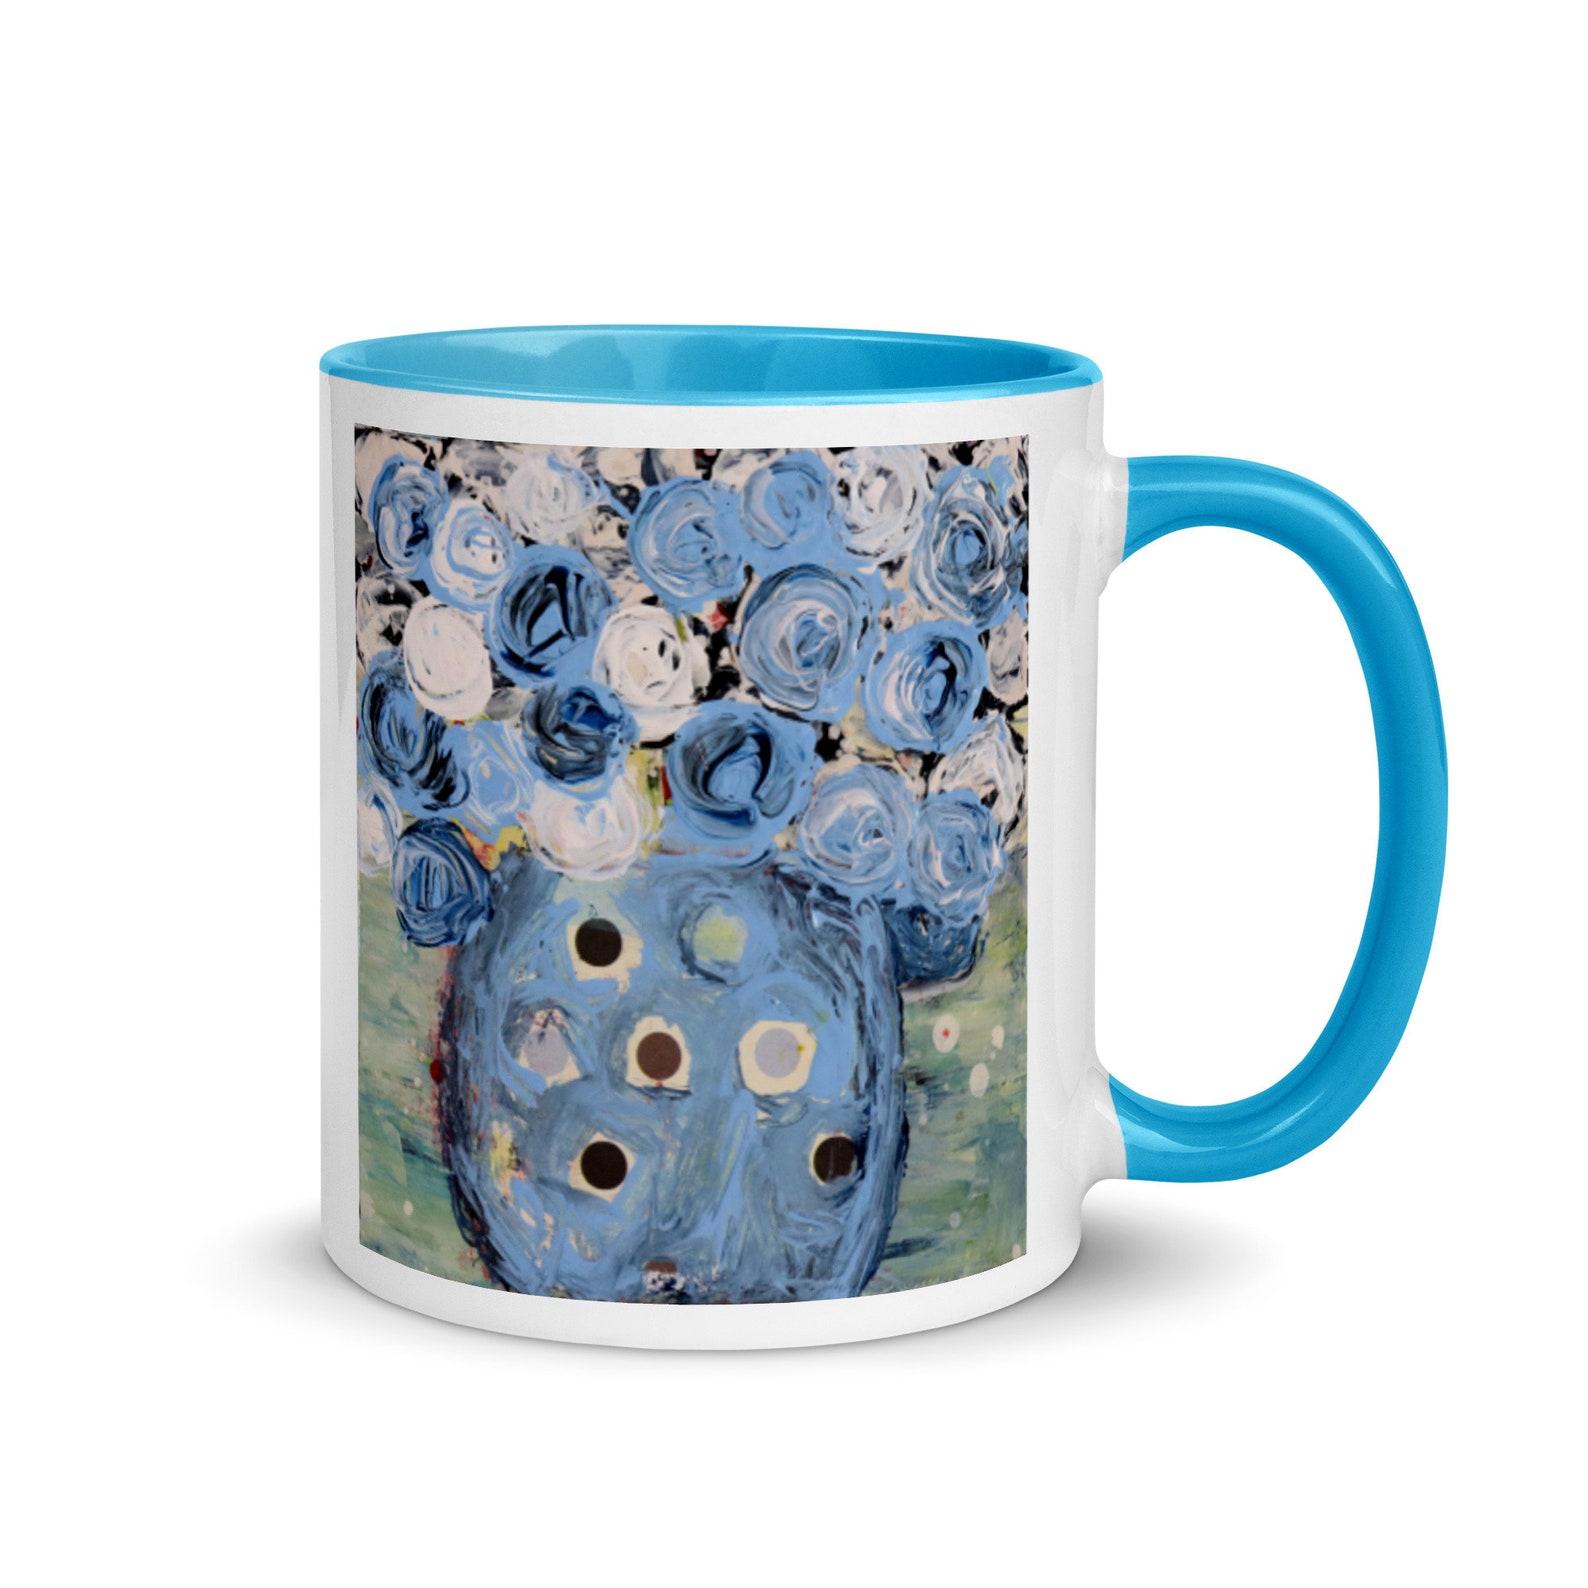 Katie Jeanne Wood - blue roses floral coffee mug